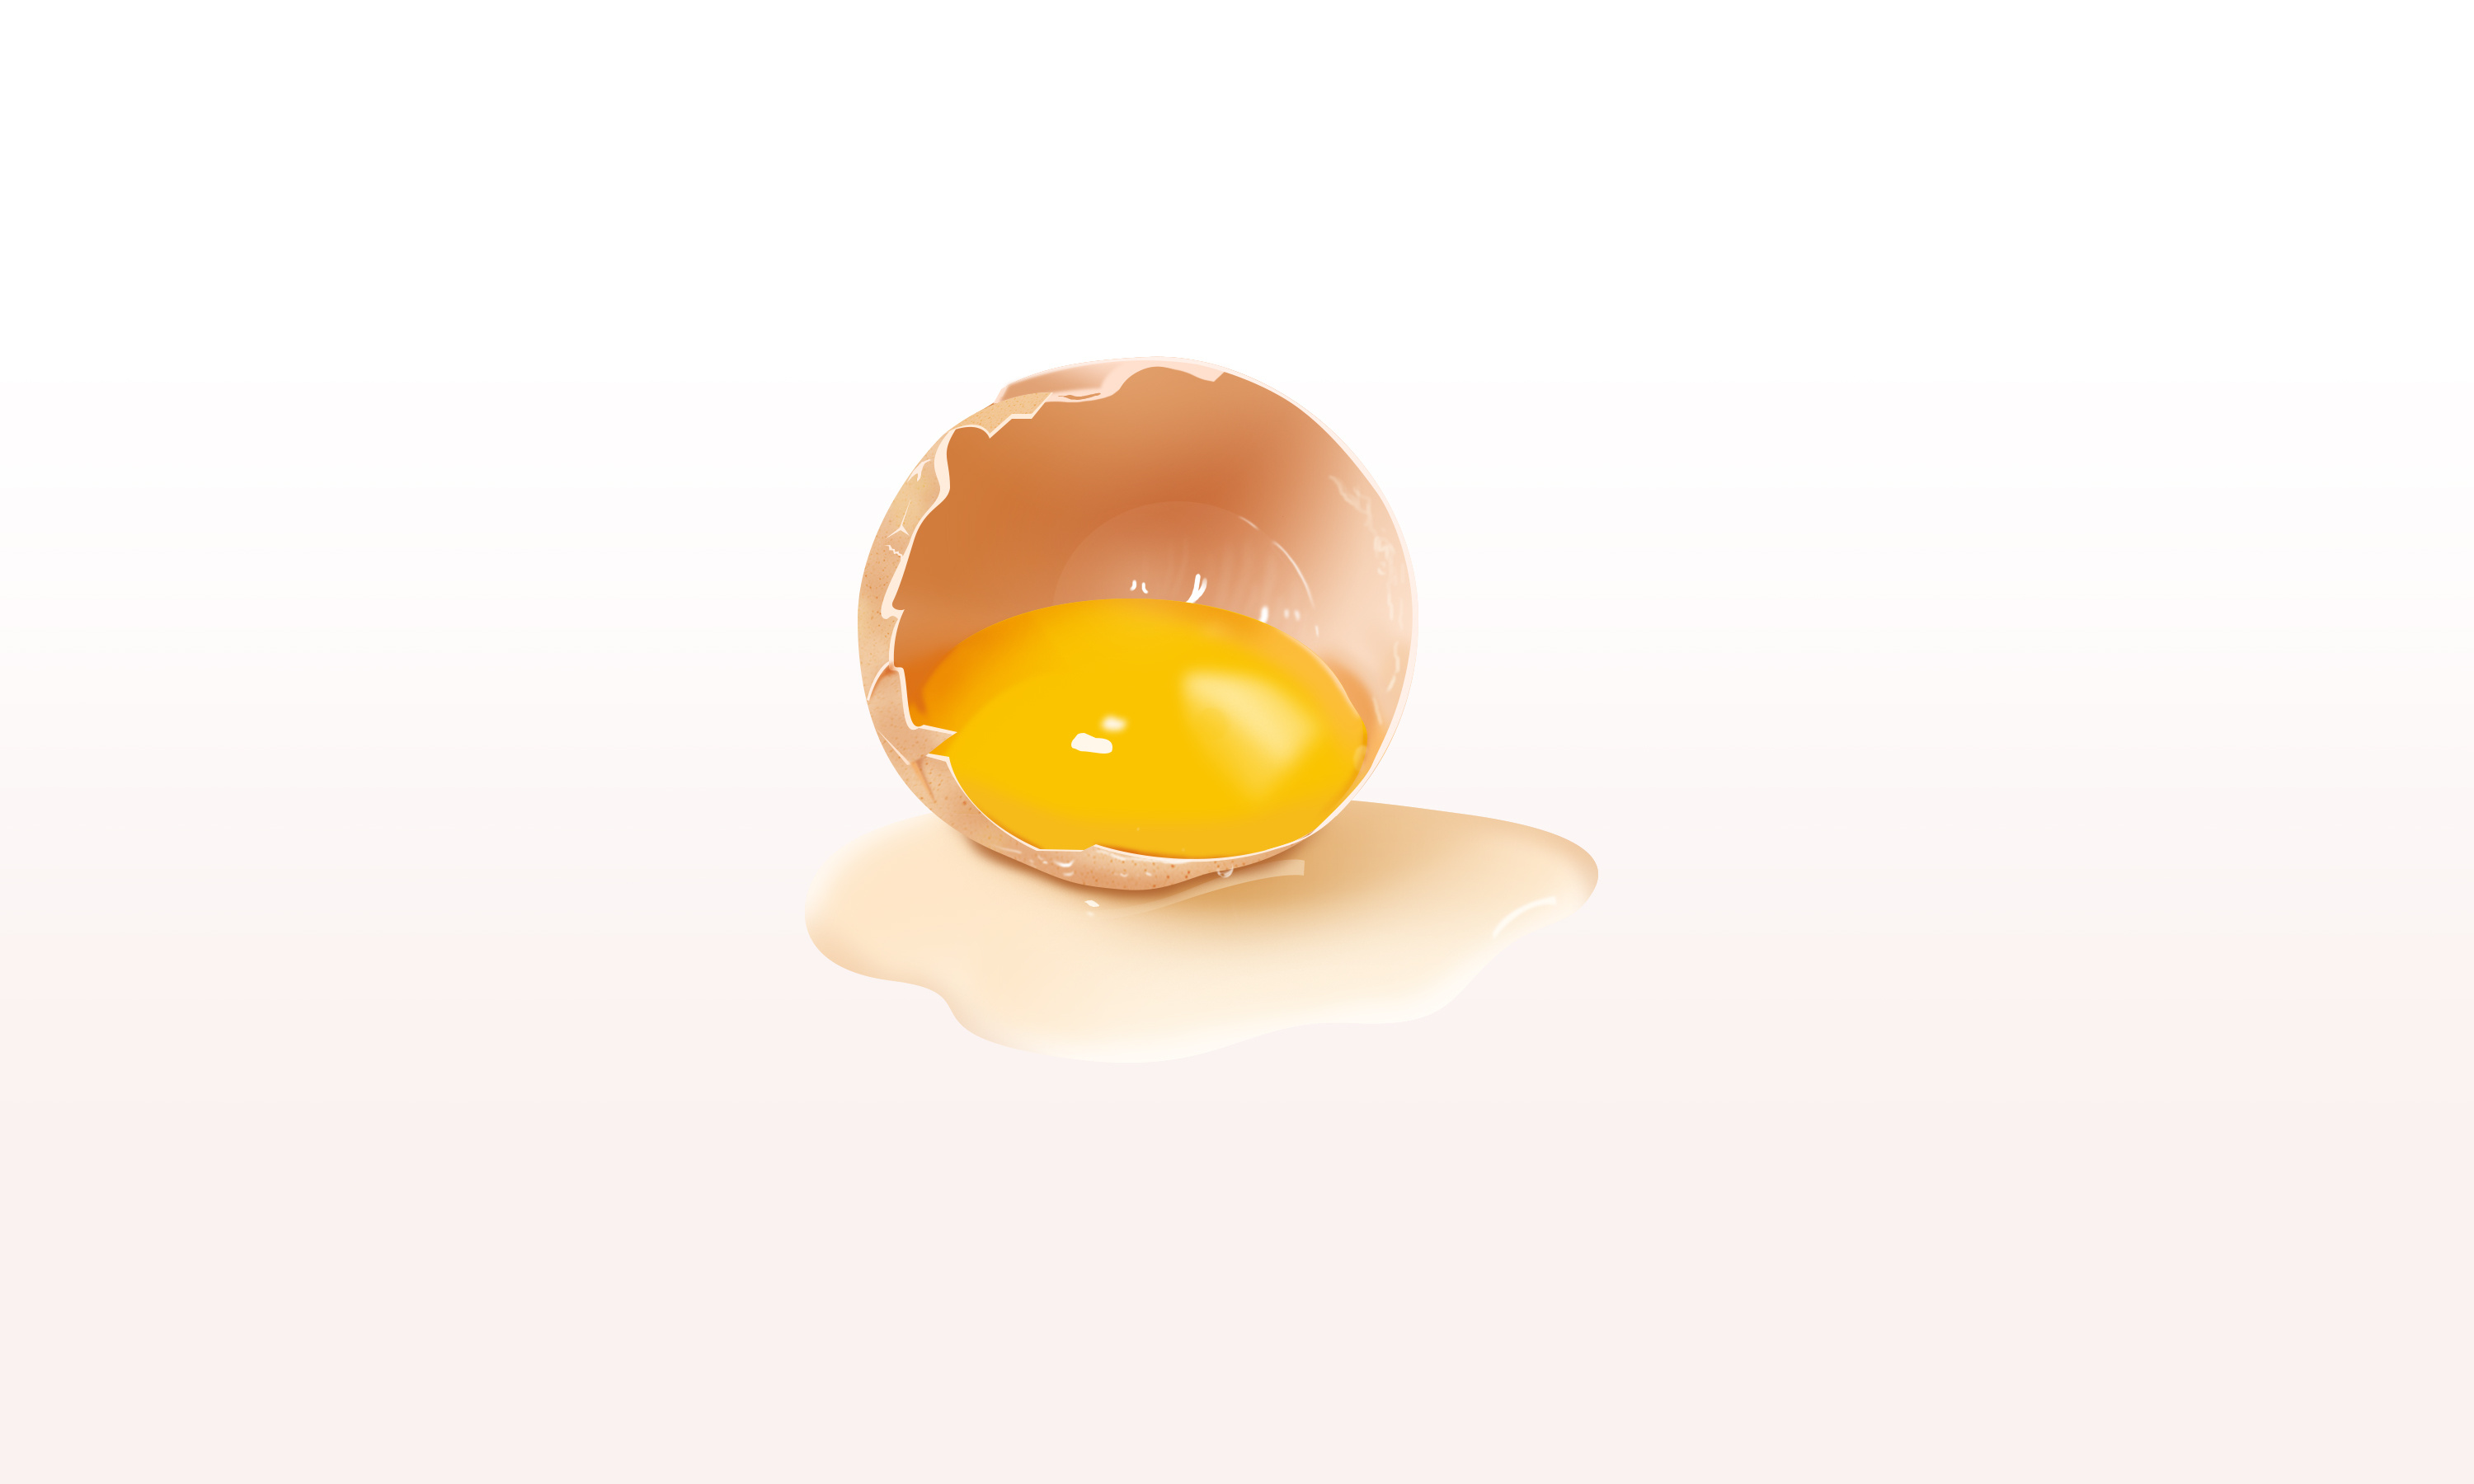 简单可爱鸡蛋绘画创意图解💛巧艺网